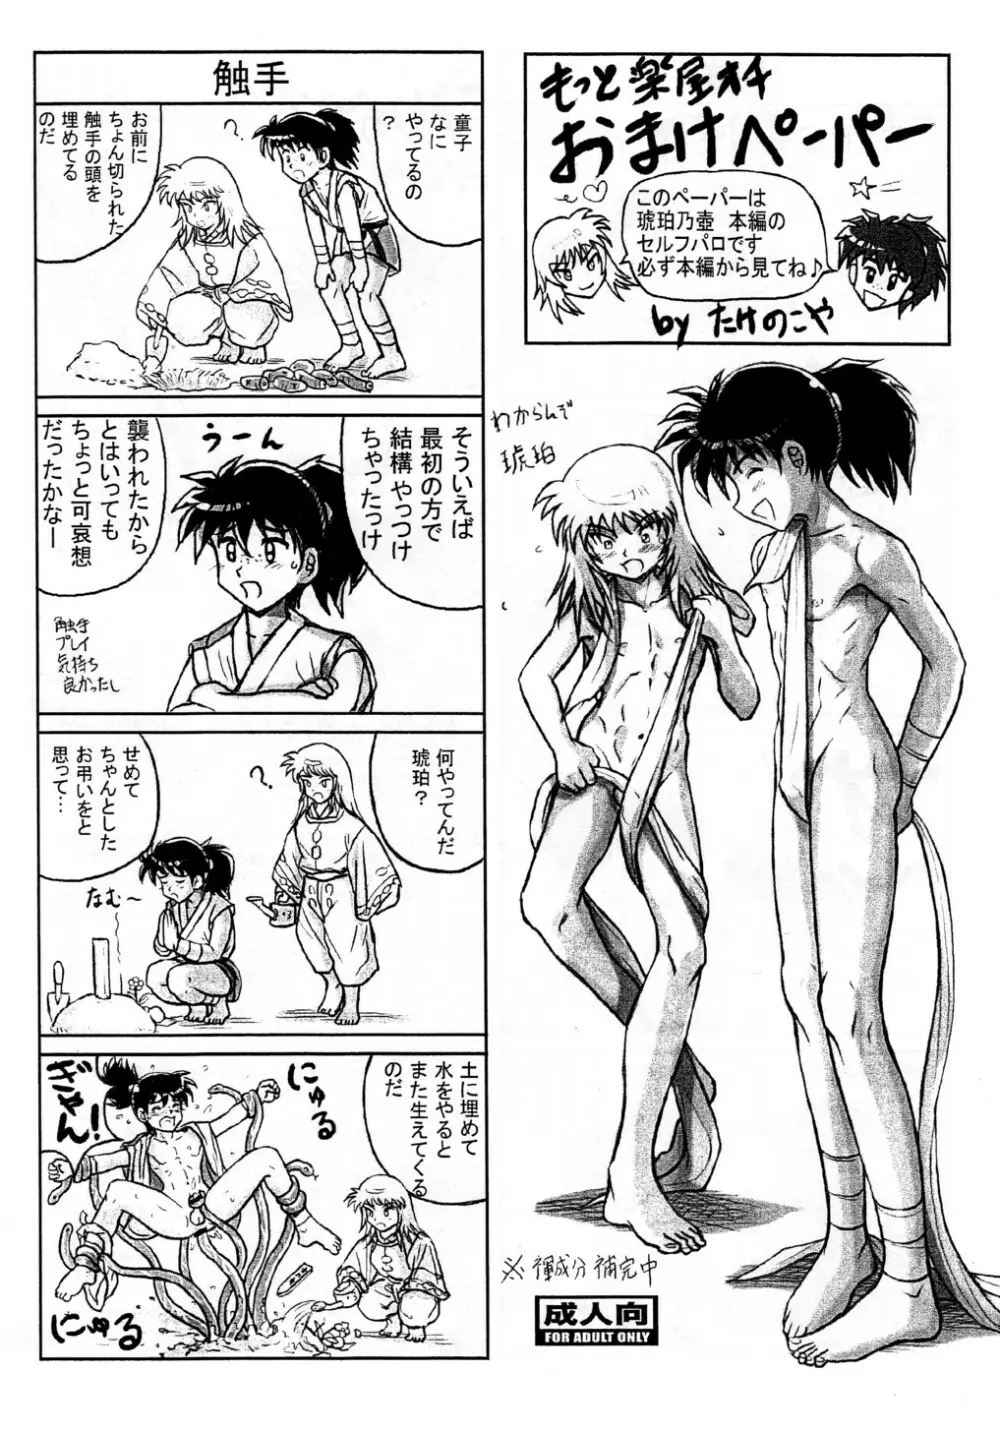 Takenokoya - Kohaku no Tsubo Manga Ban - page4